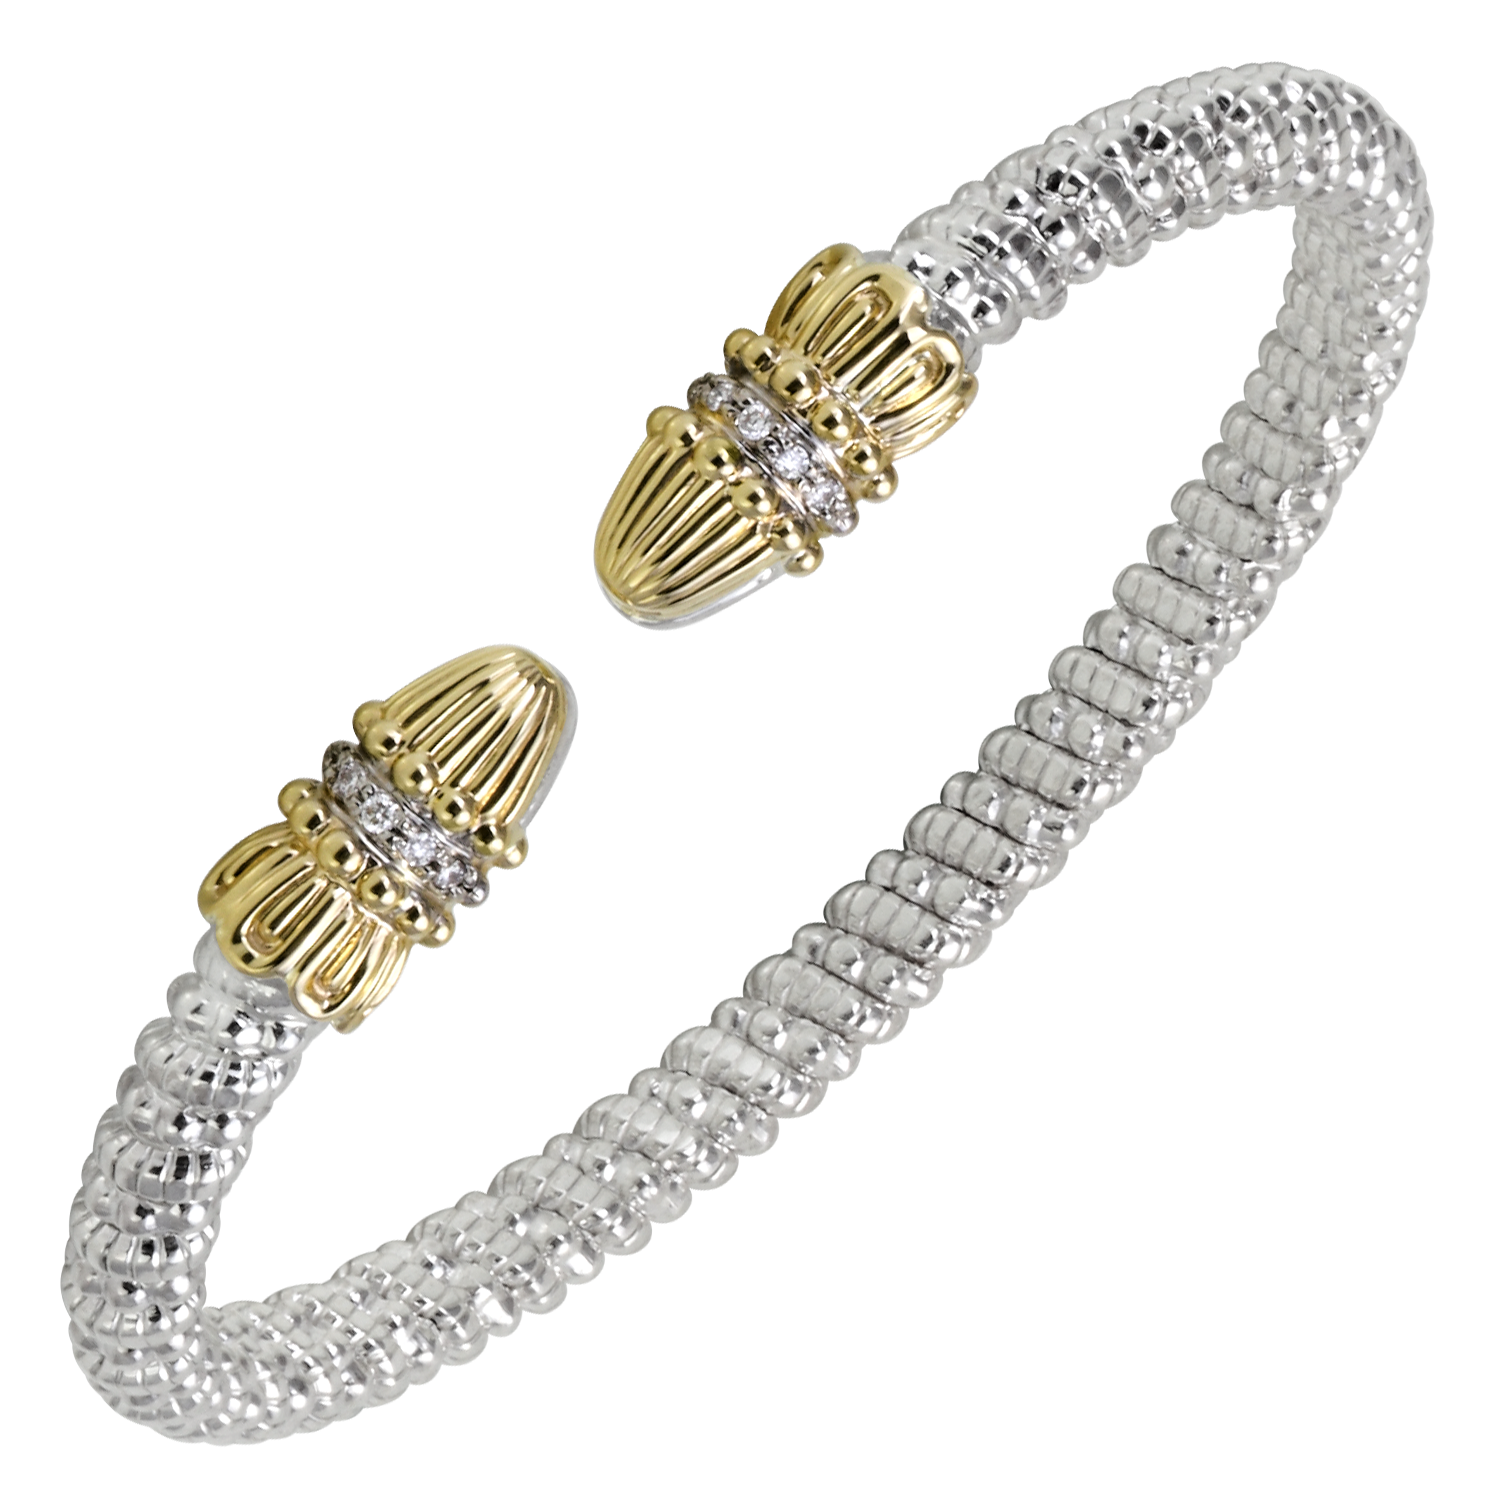 Buy Vahan Bracelets | Sterling Silver & 14K Gold | 0.08cttw Diamonds | 4mm Width | Shop Avonlea Jewelry only at Avonlea Jewelry.